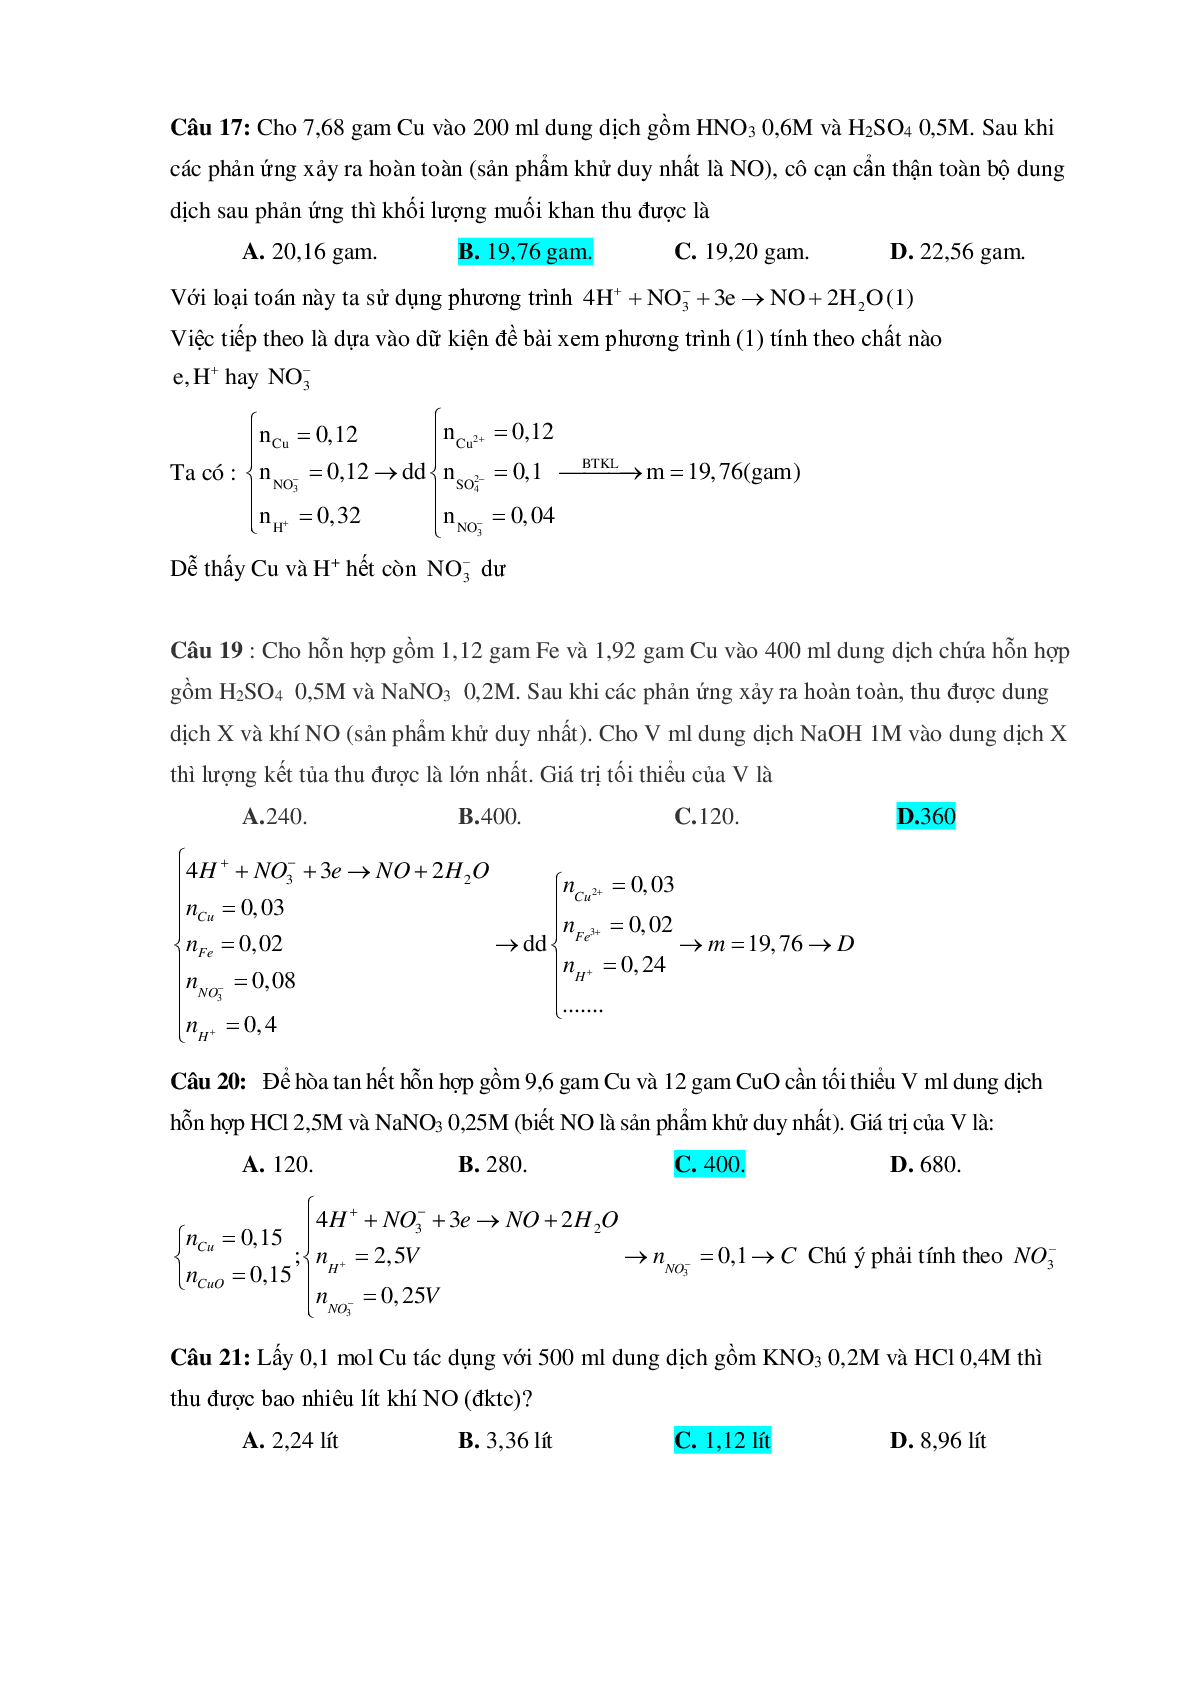 Bài tập về HNO3 vận dụng cao với phương pháp bảo toàn electron có đáp án (trang 6)